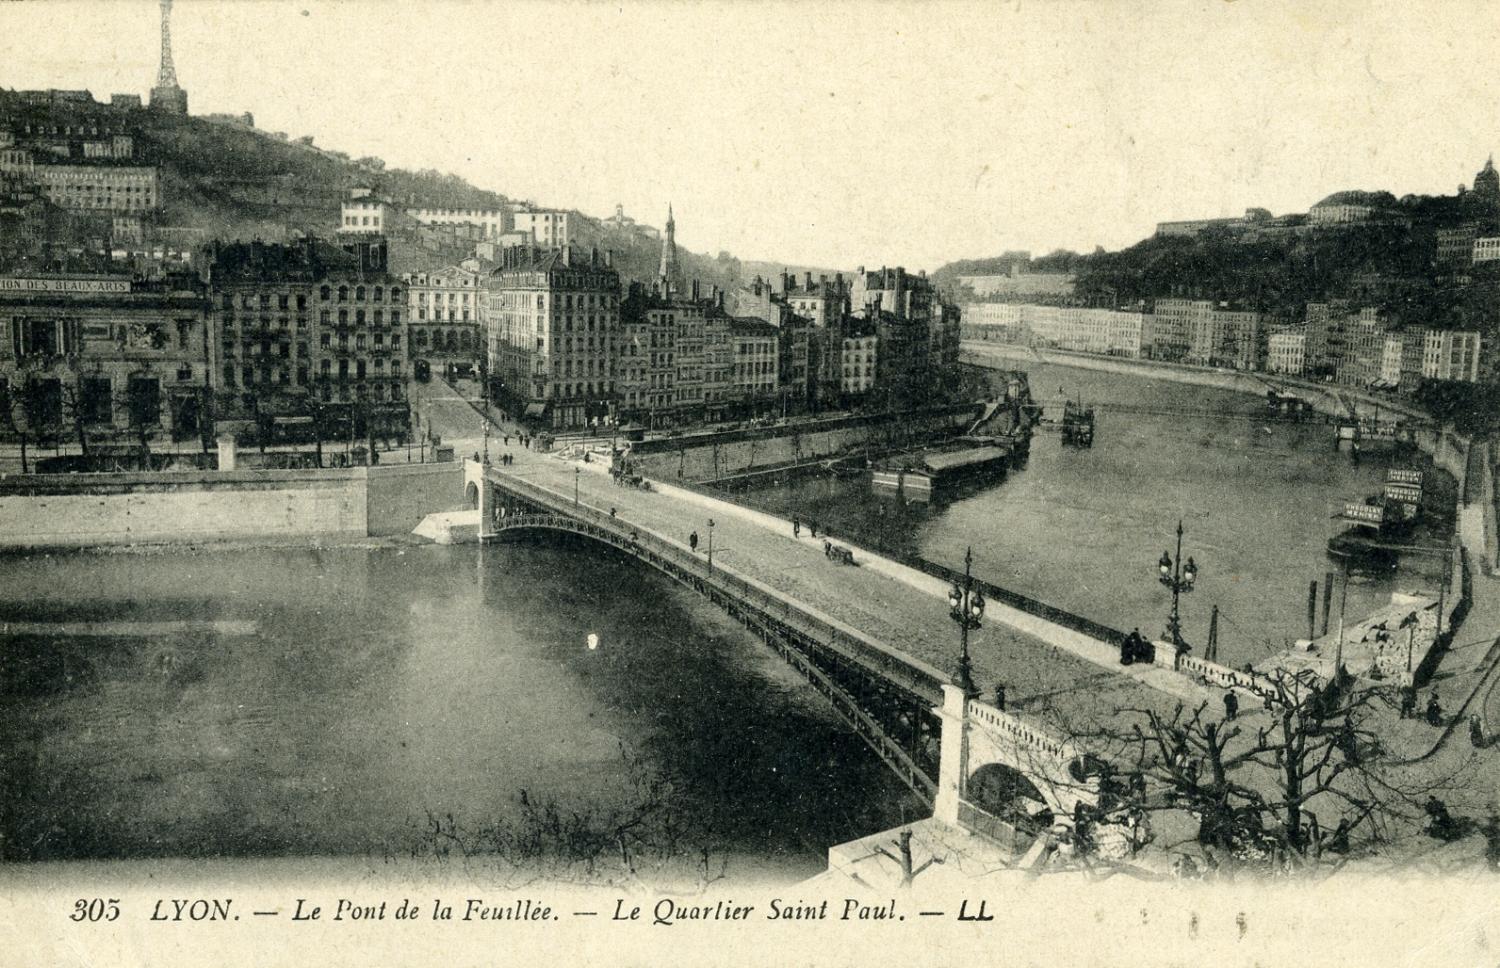 Lyon. - Le Pont de la Feuillée. - Le Quartier Saint Paul.